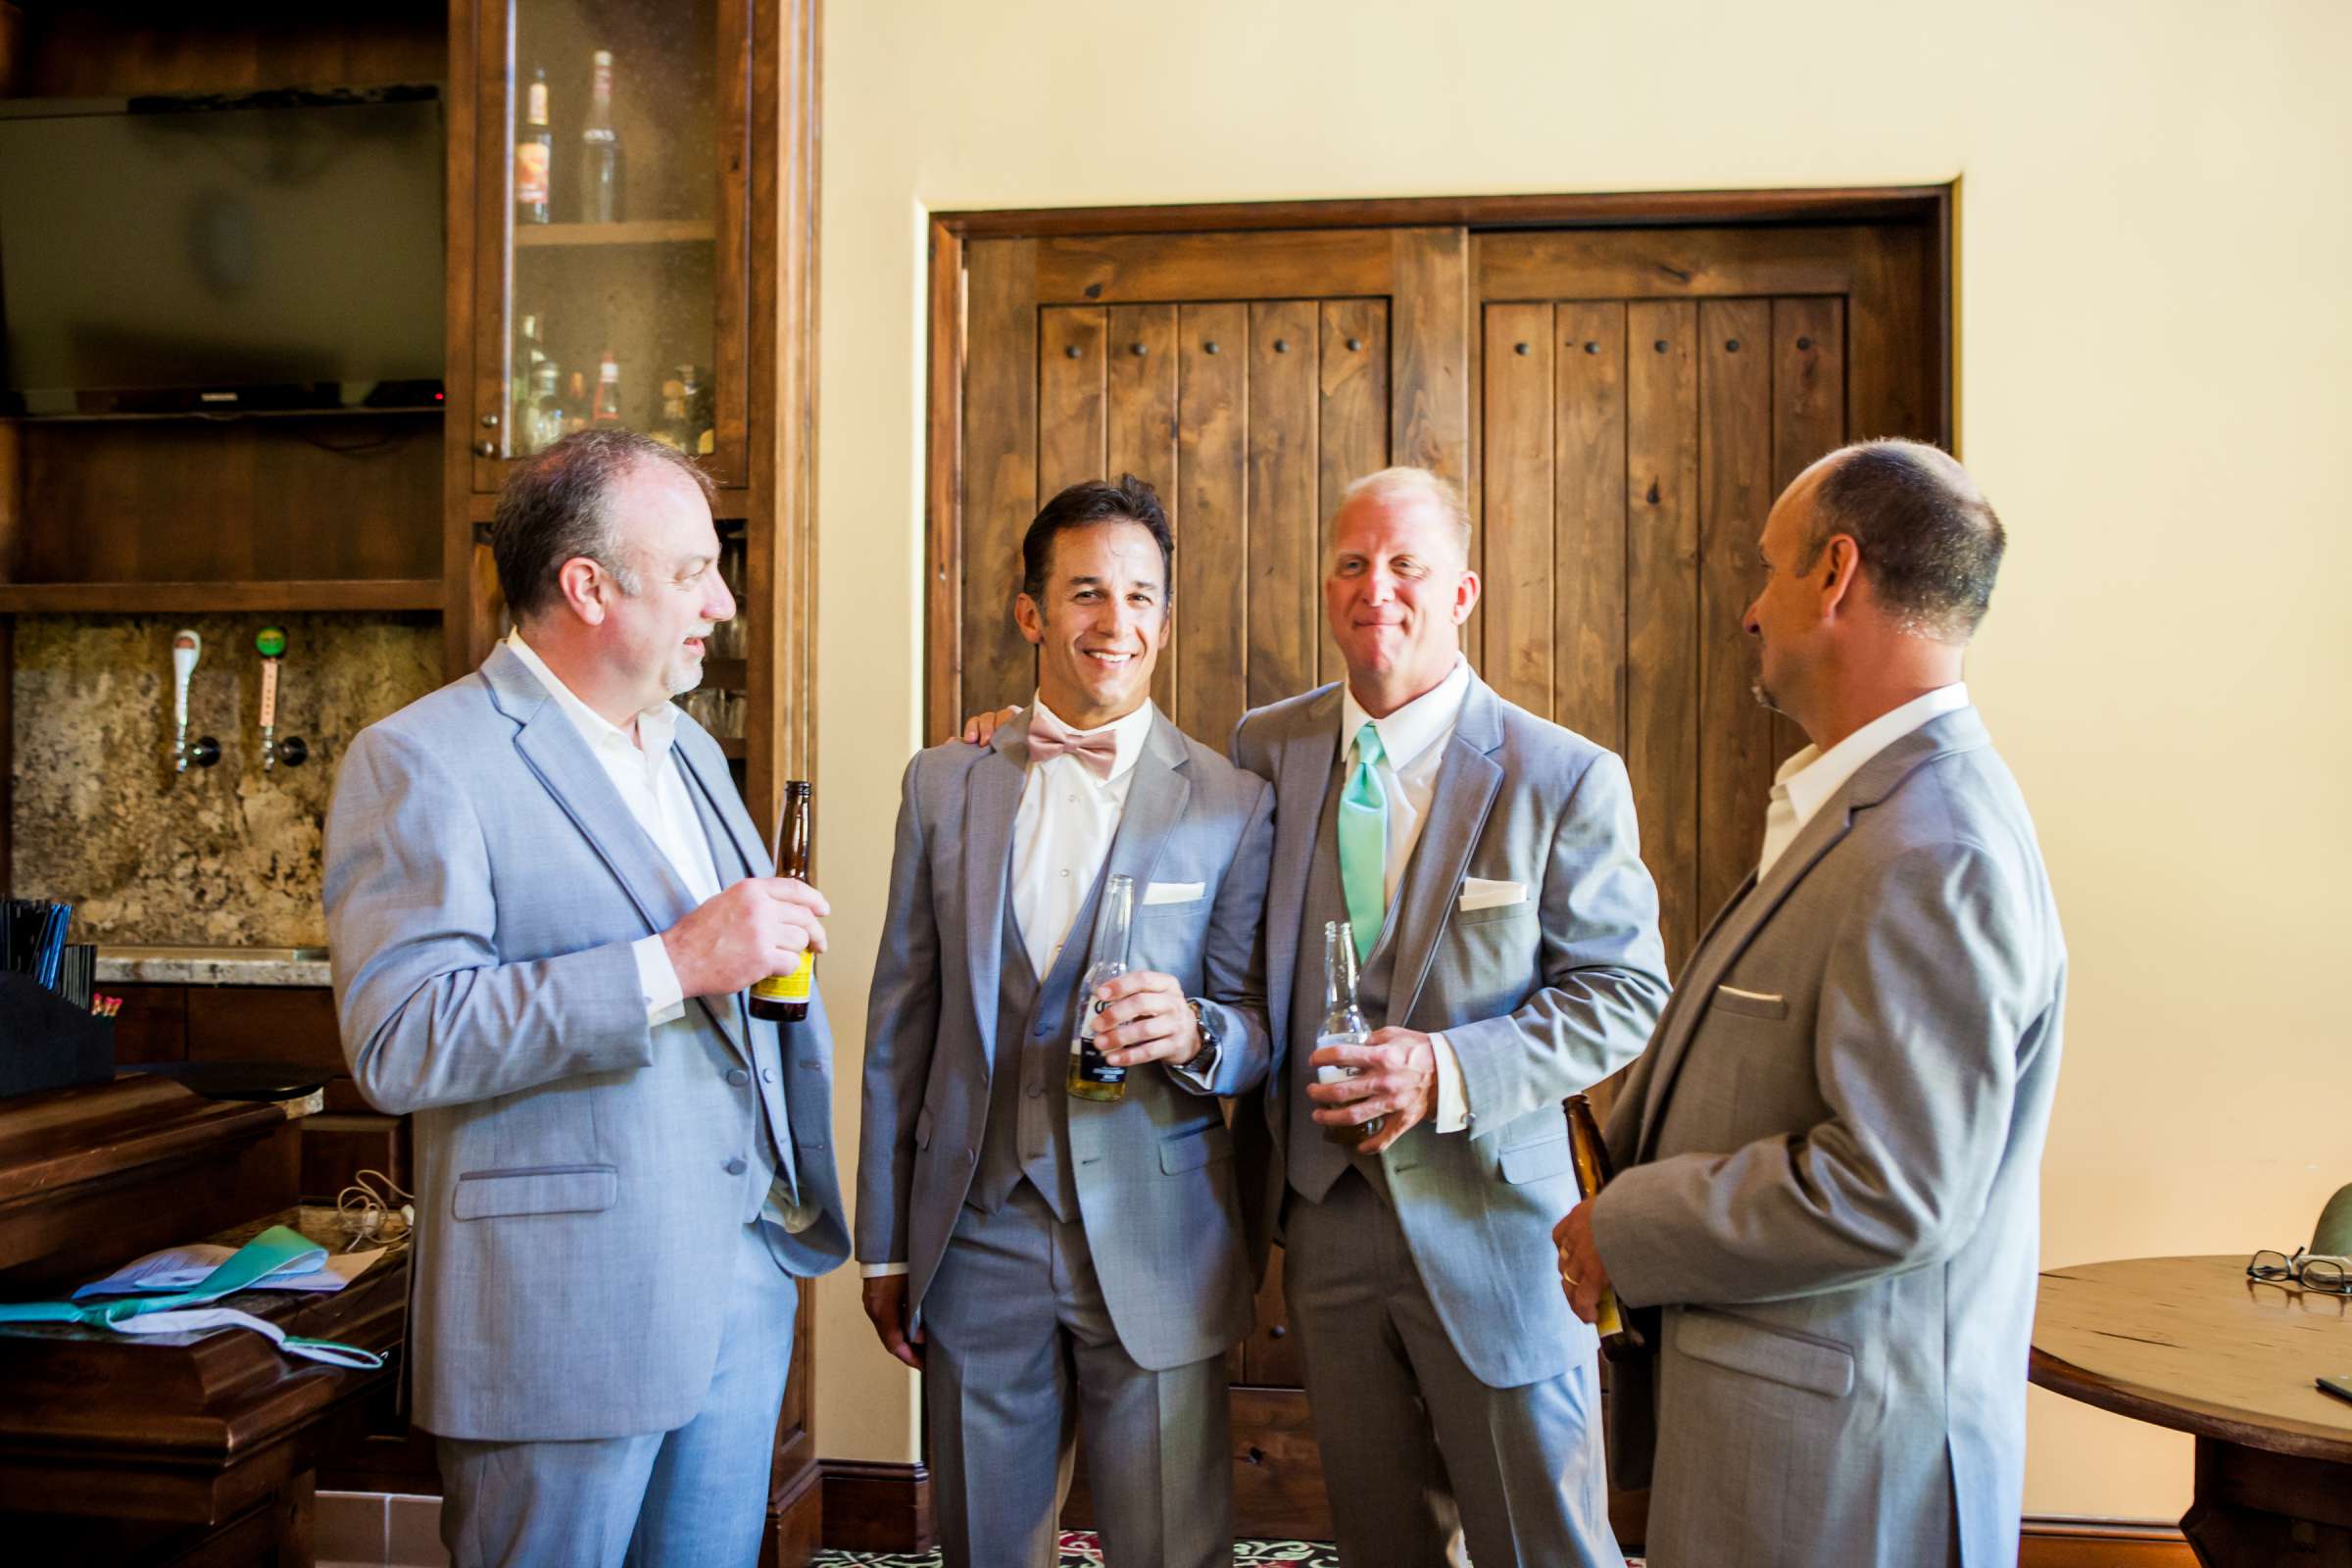 Rancho Santa Fe Golf Club Wedding coordinated by Monarch Weddings, Carolynn and Jon Wedding Photo #48 by True Photography